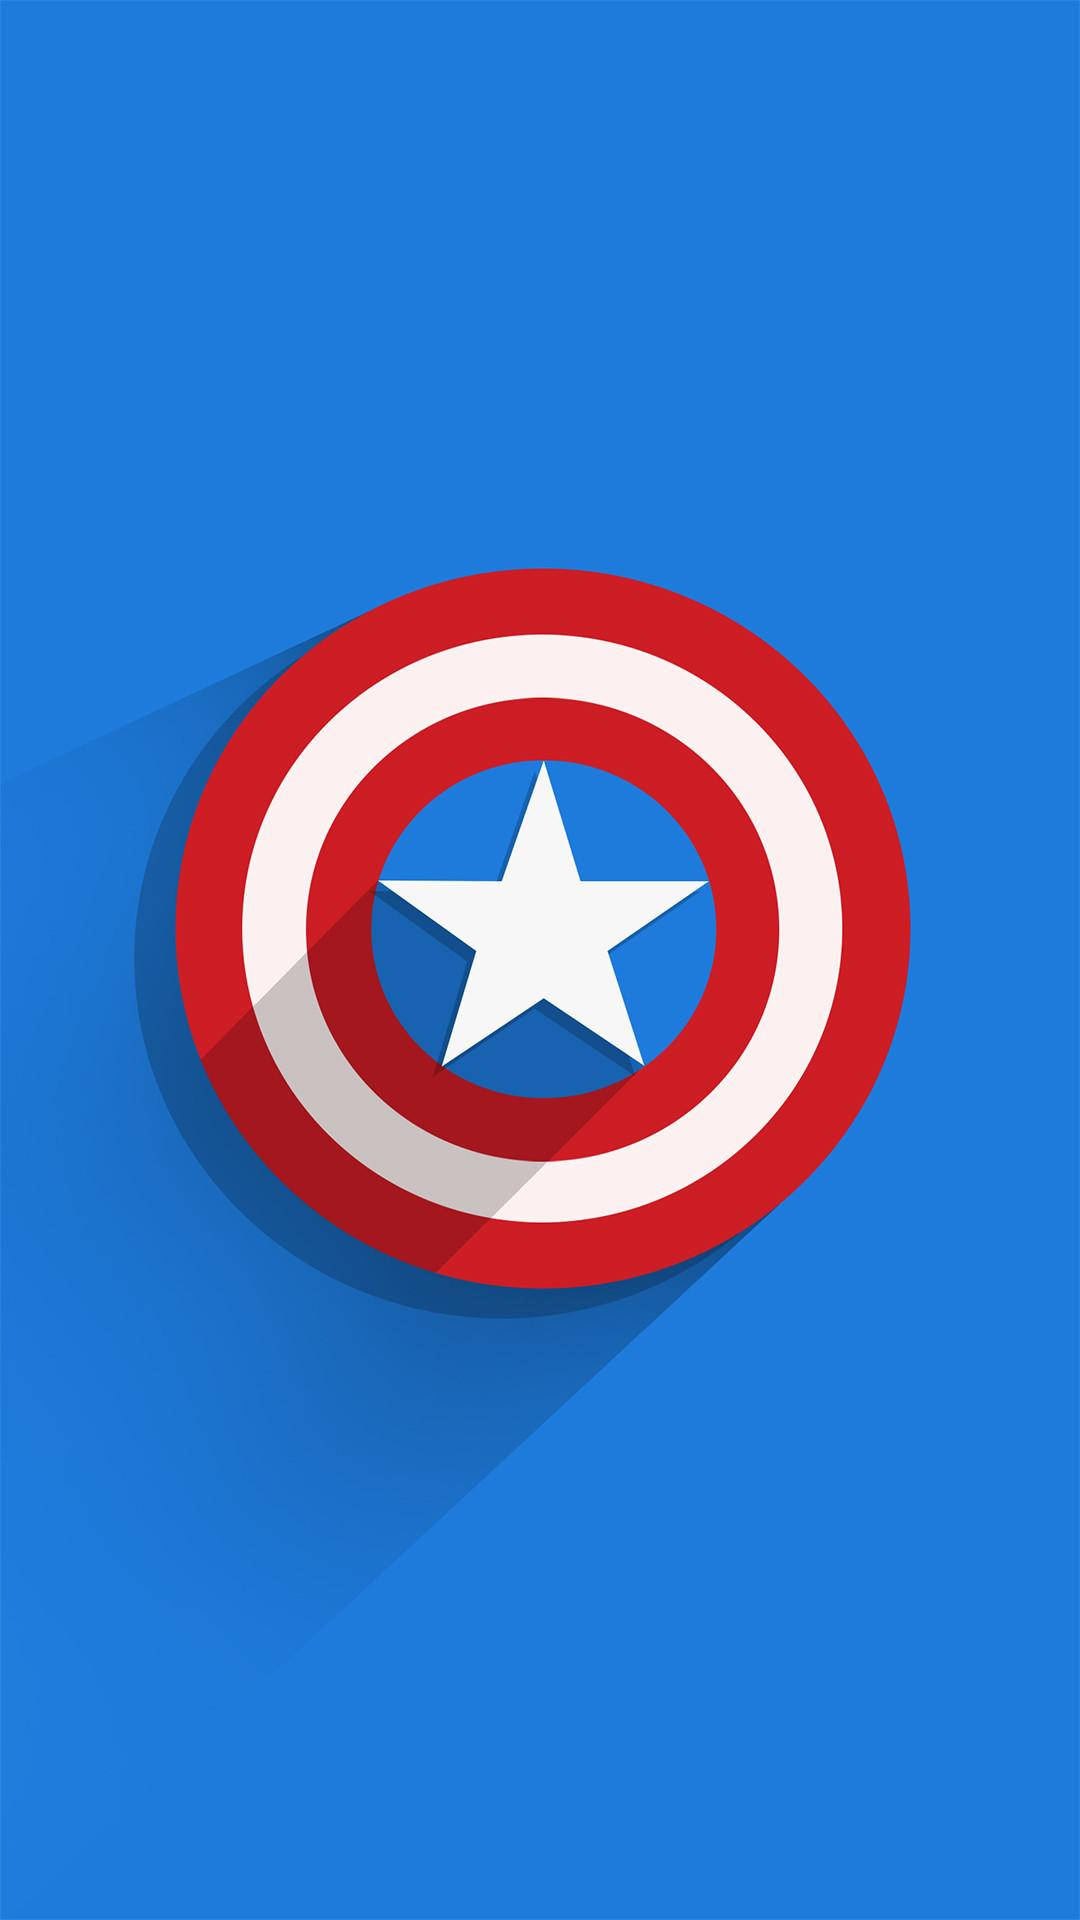 Escudodel Capitán América Para Iphone Con Sombra. Fondo de pantalla